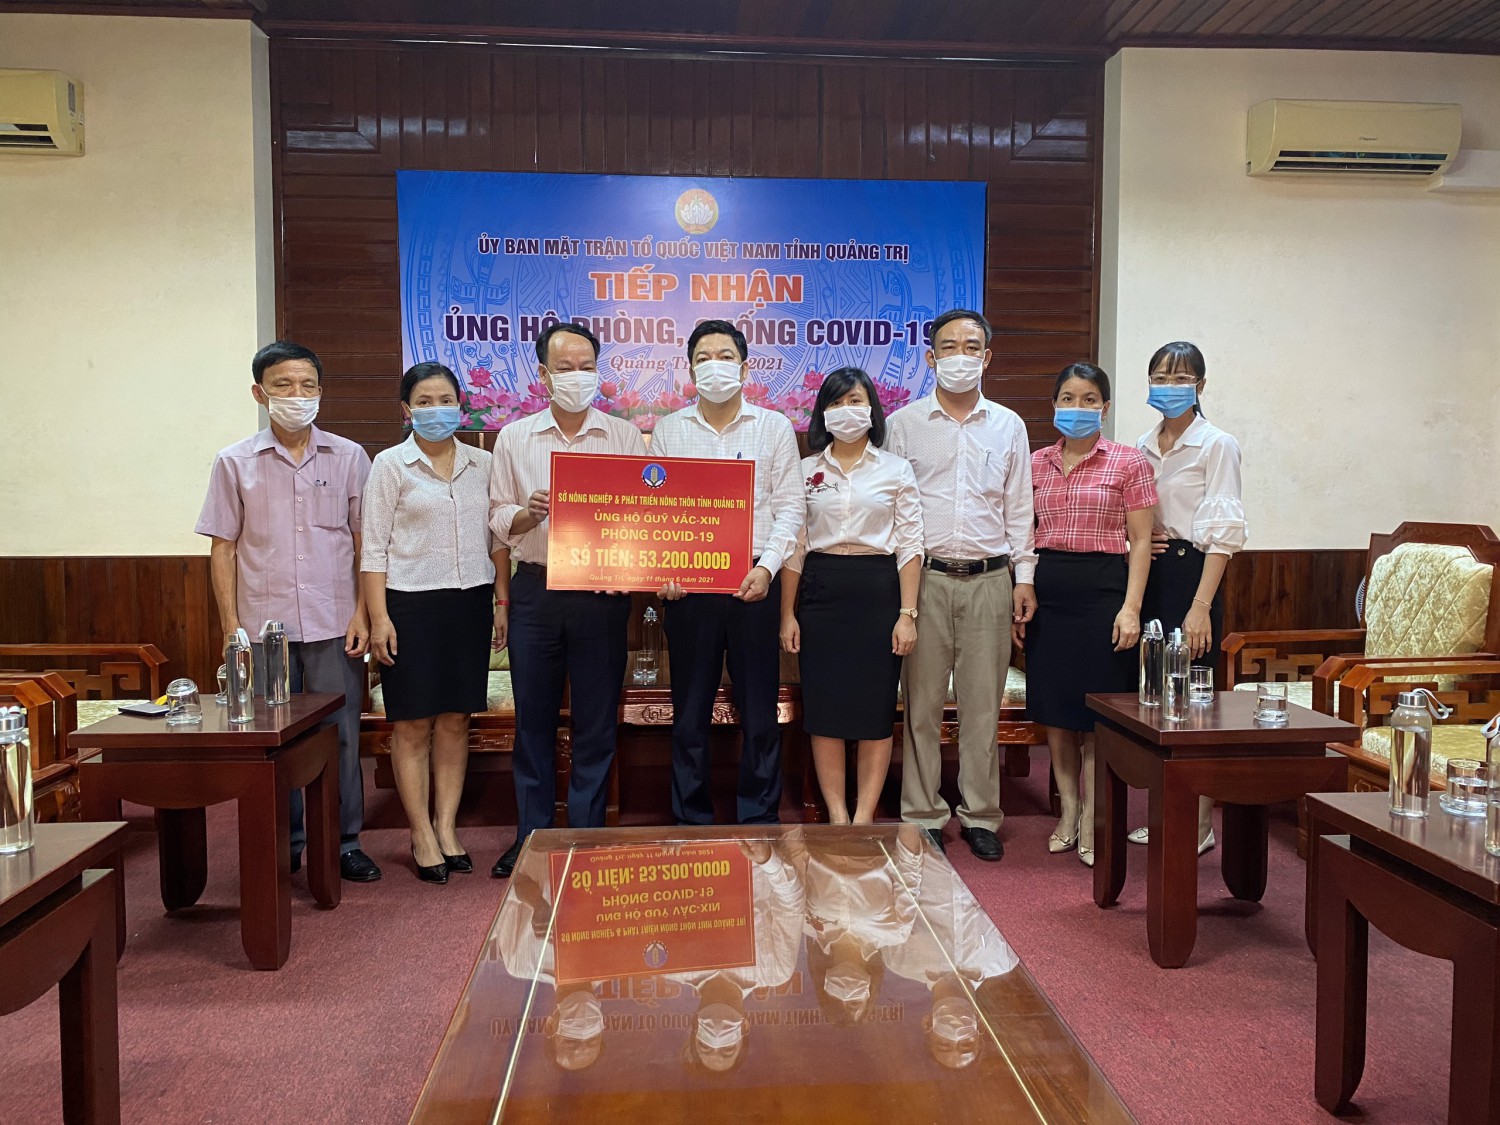 TIN ẢNH: Các CĐCS tích cực ủng hộ  quỹ phòng chống Covid-19, ủng hộ  TP Hồ Chí Minh và các tỉnh miền Nam đẩy lùi dịch bệnh COVID-19